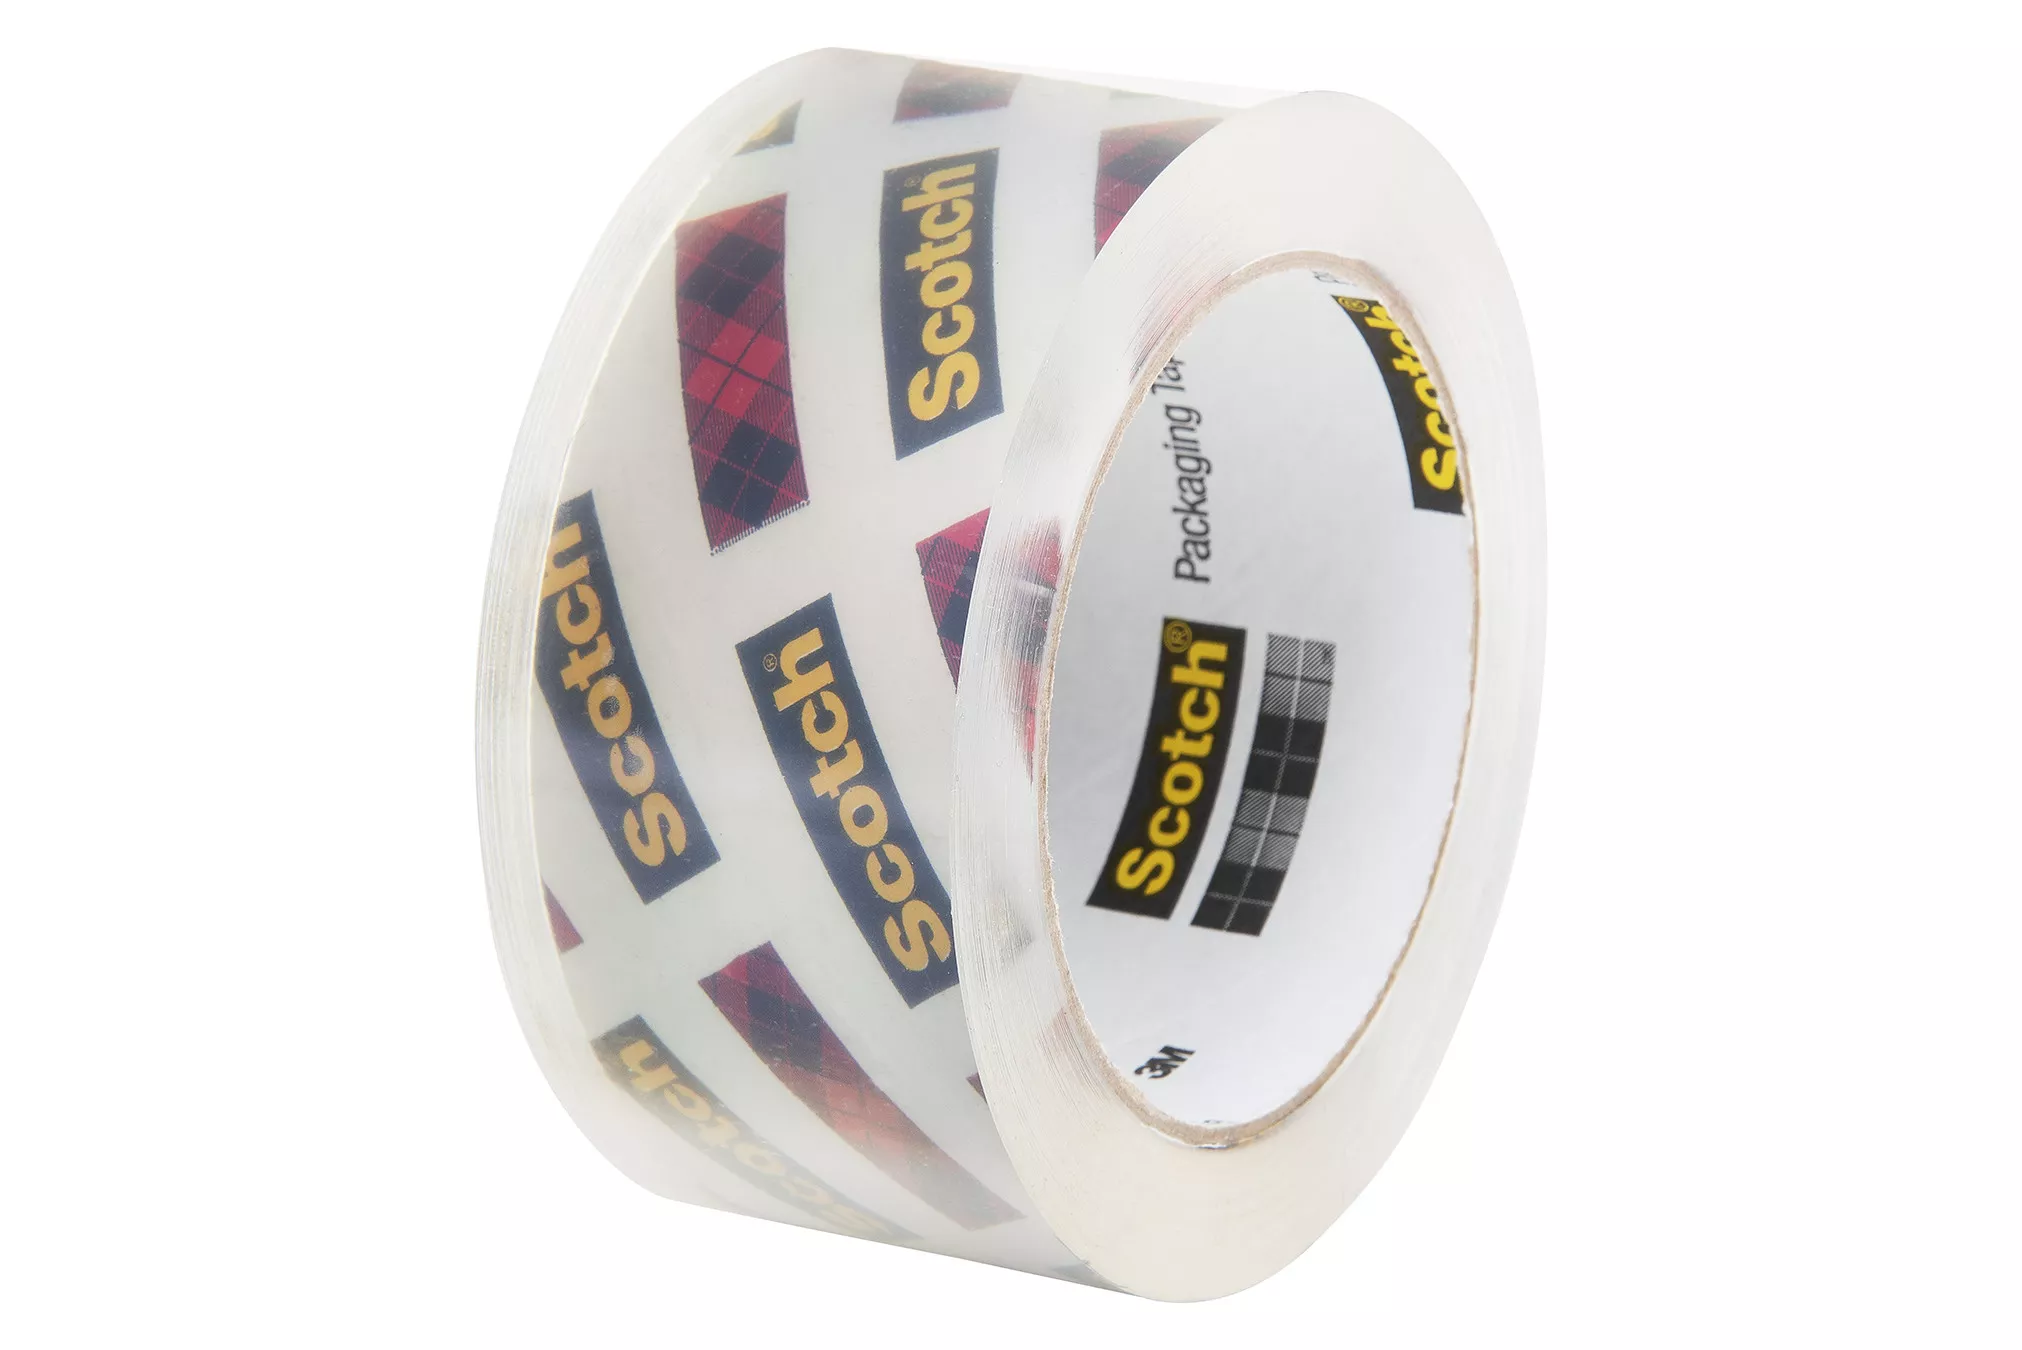 SKU 7100233598 | Scotch® Shipping Packaging Tape 3950-6